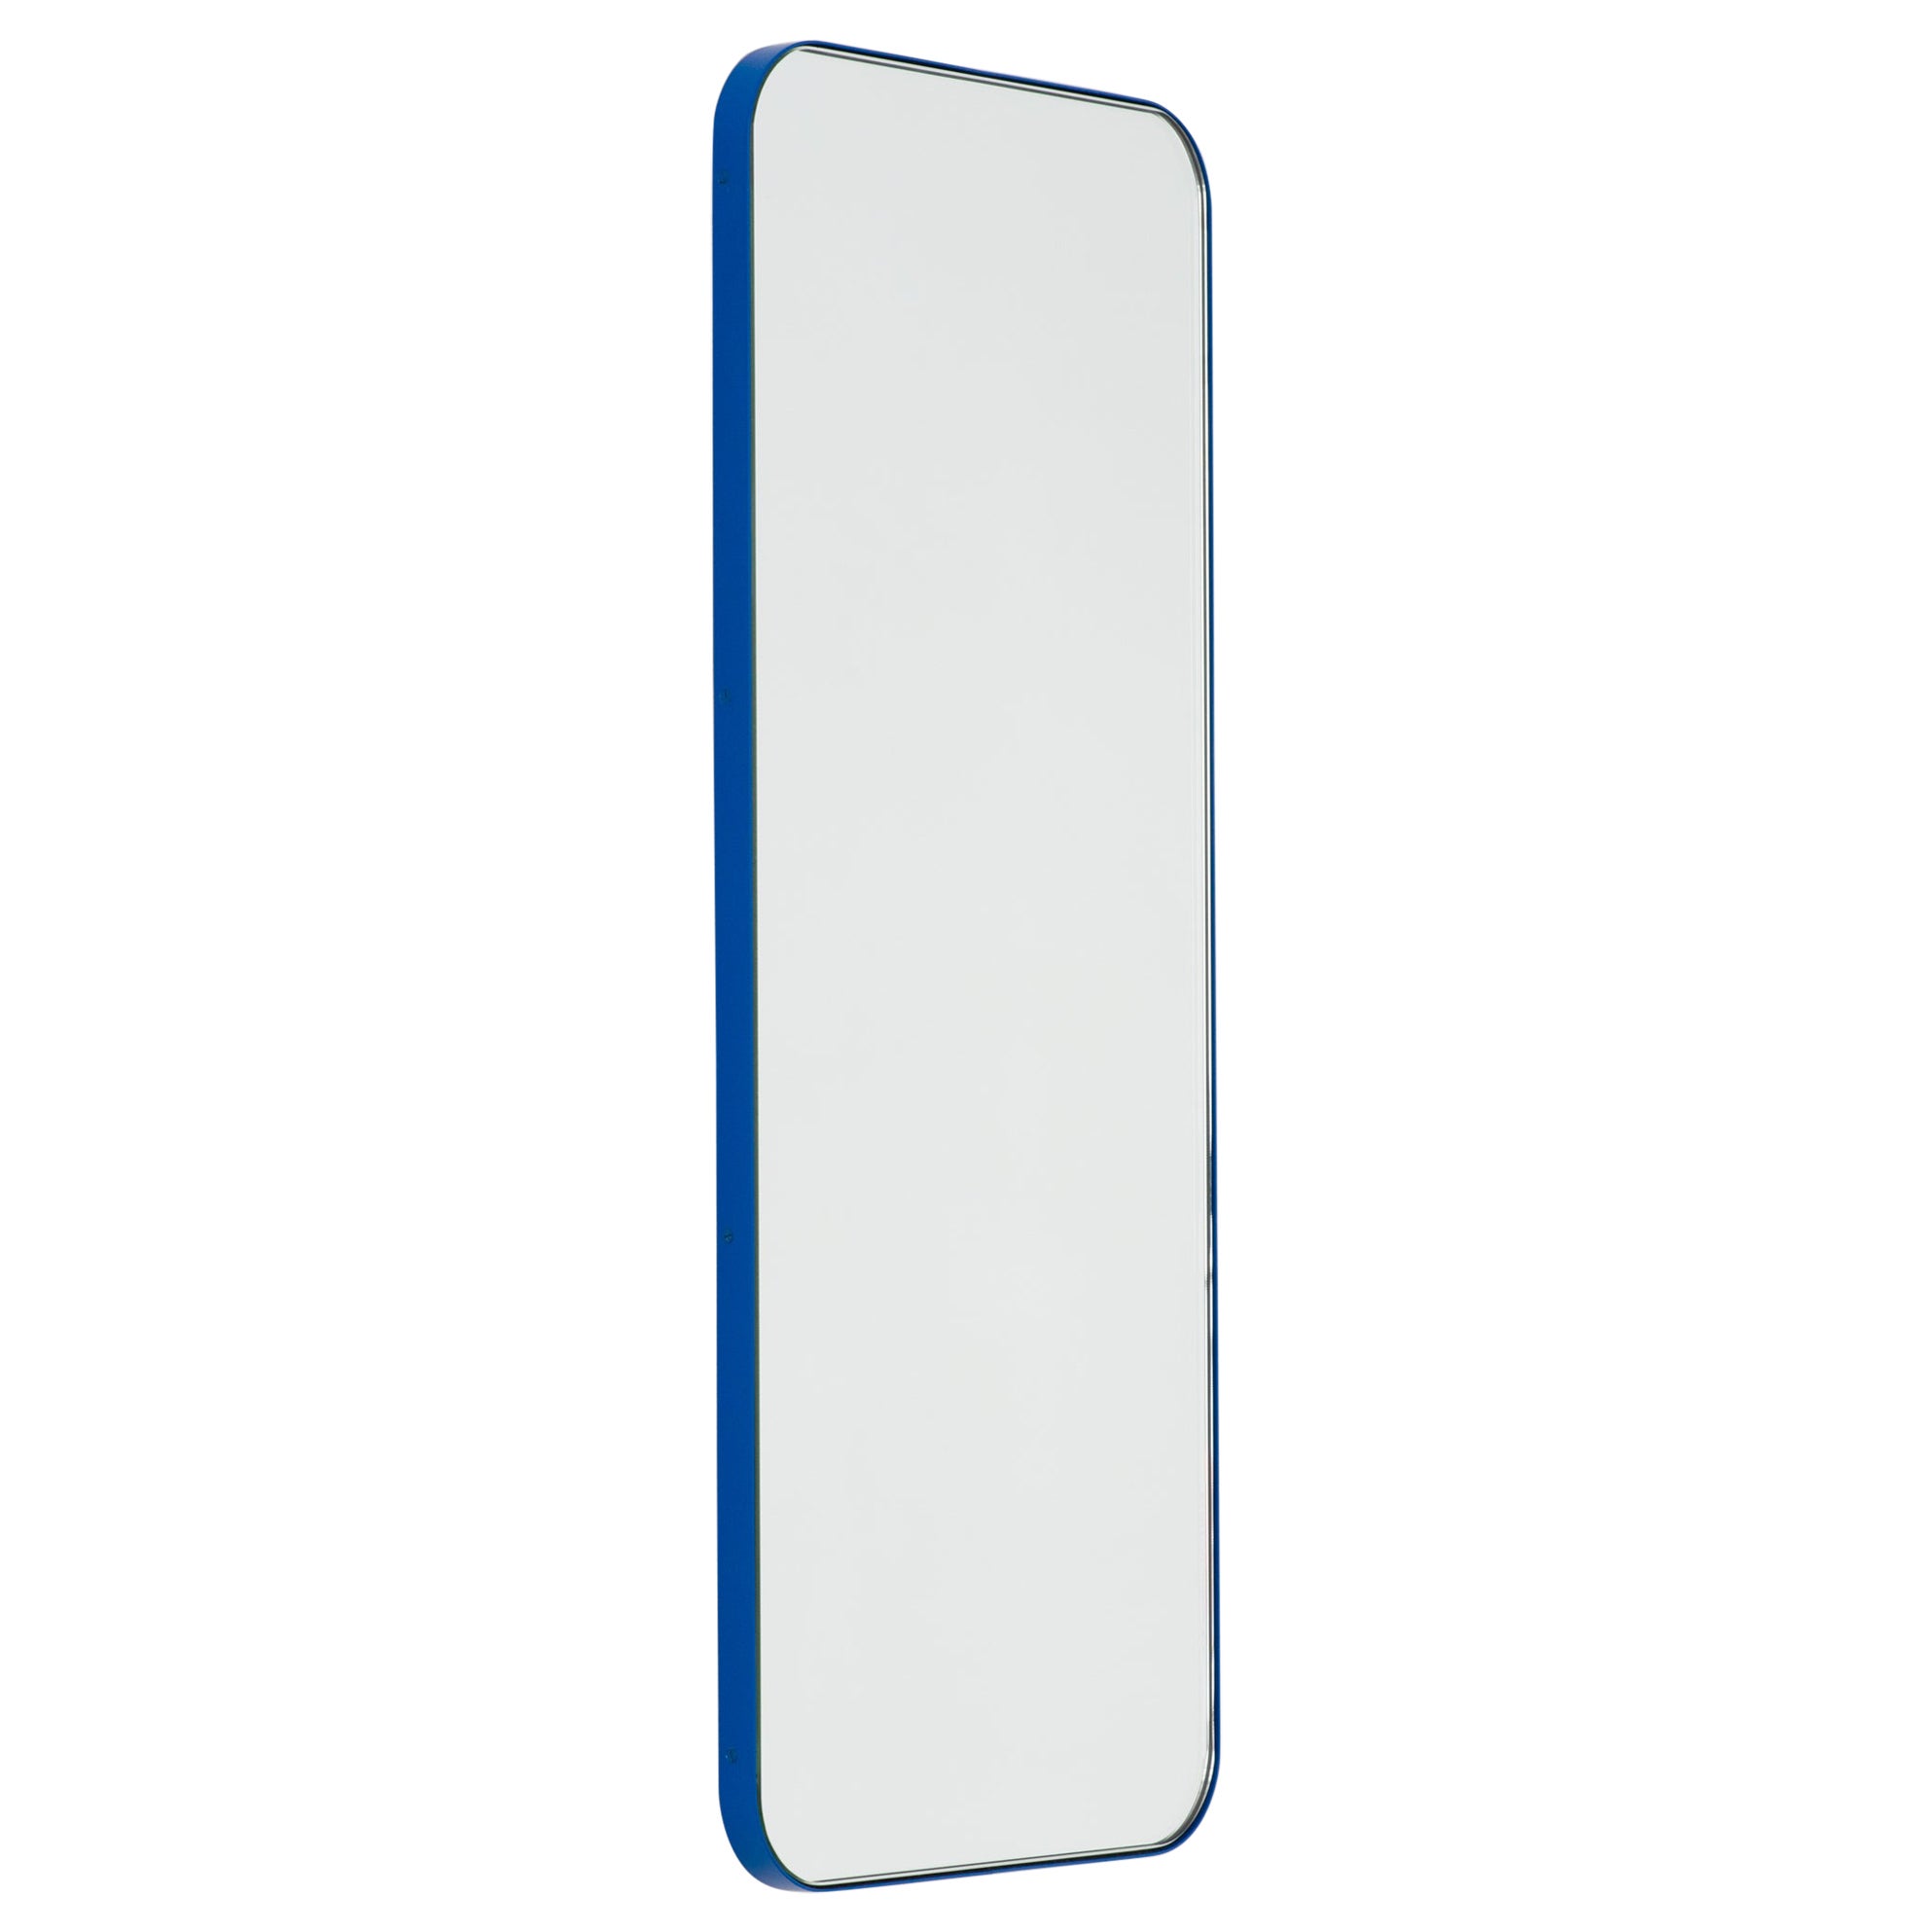 Quadris Rechteckiger minimalistischer Spiegel mit blauem Rahmen, groß